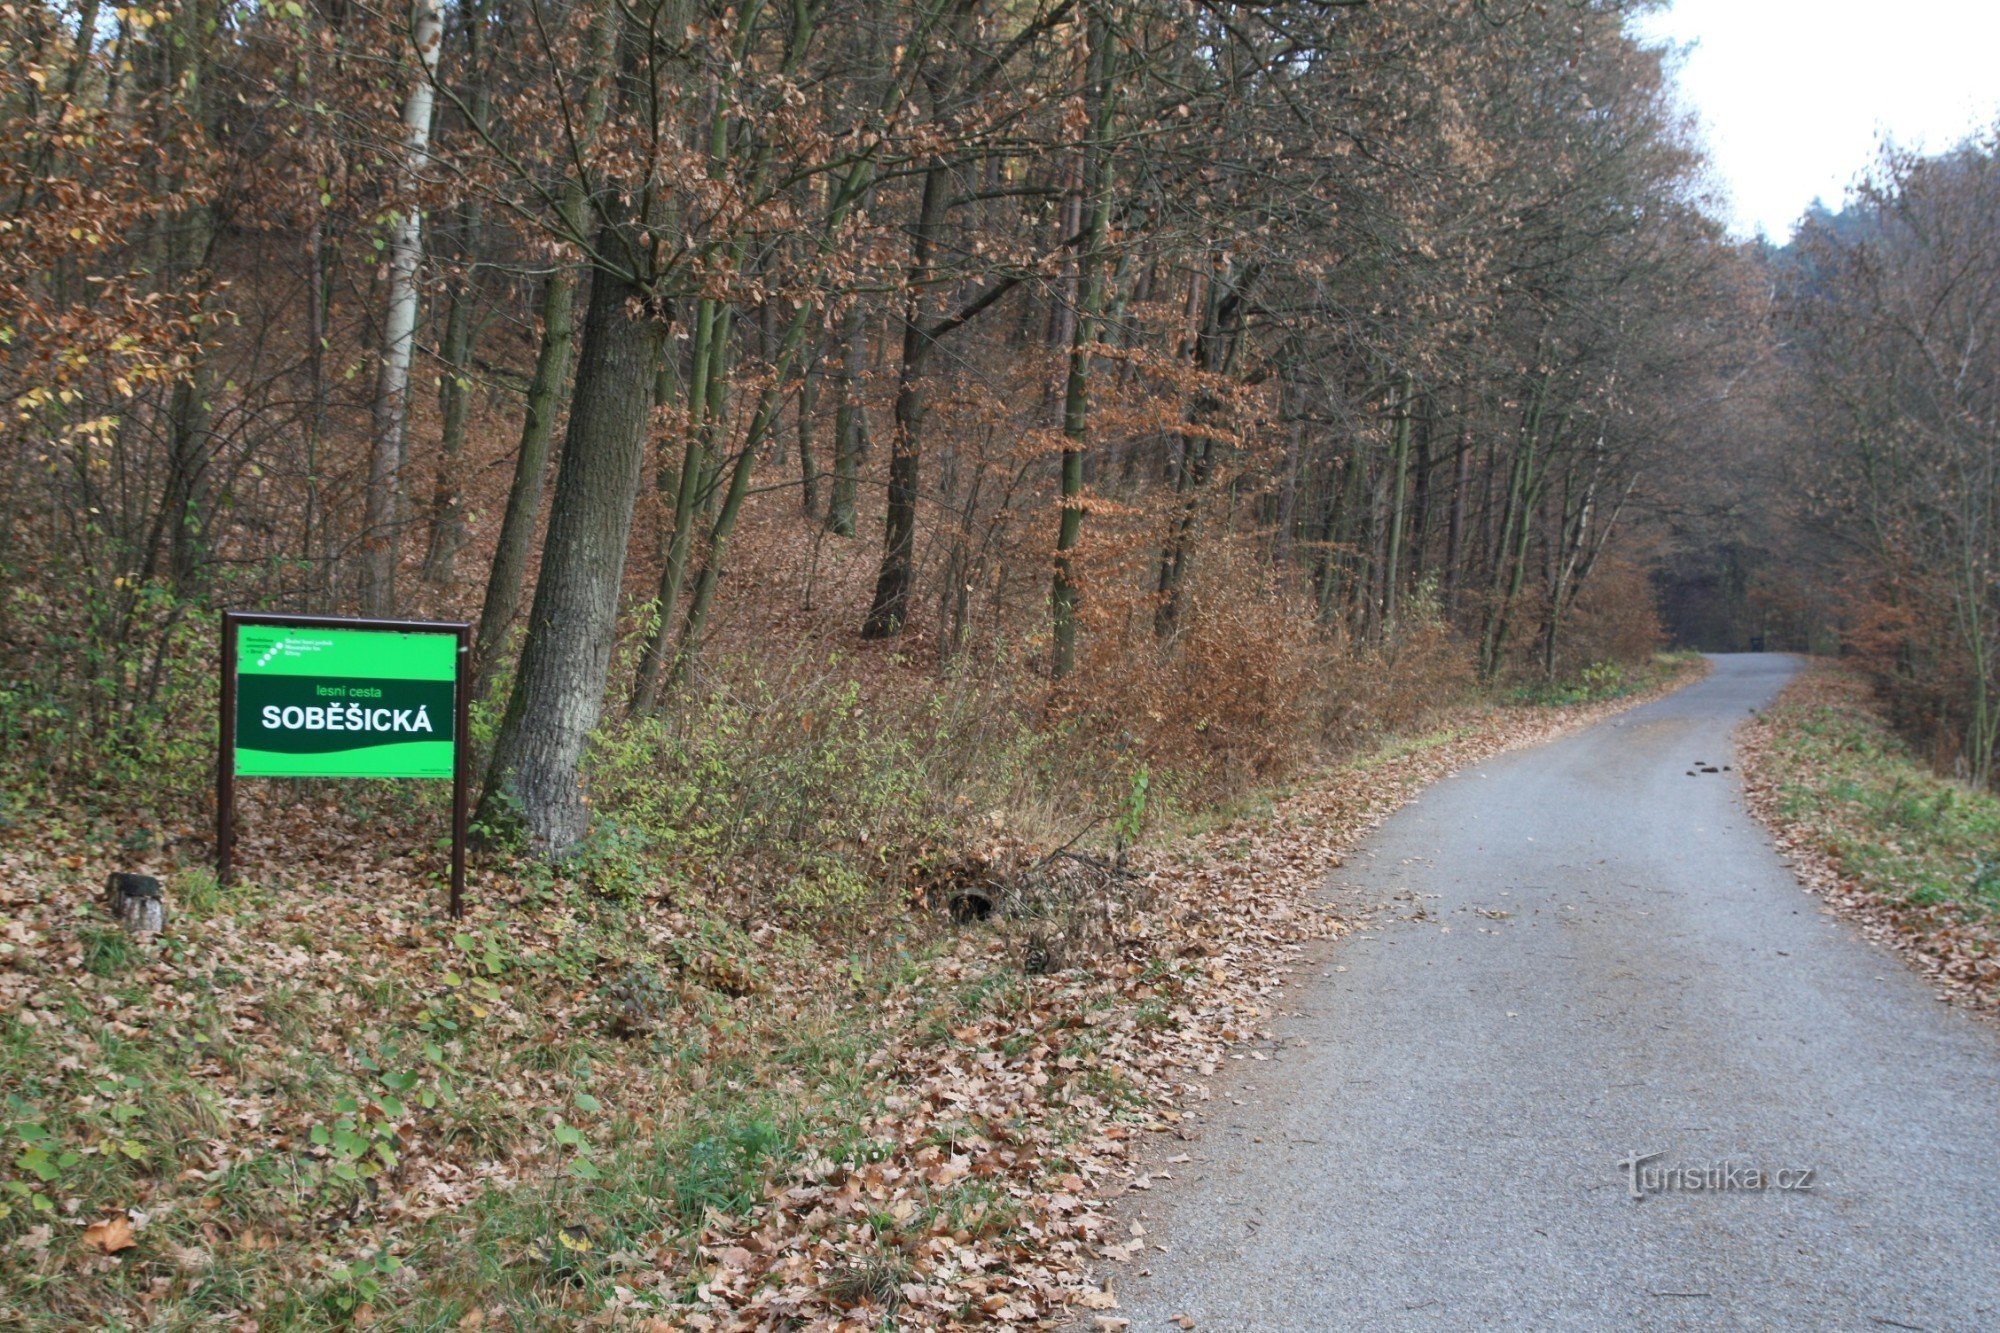 La cesta Soběšická commence à la fin du village au début de la forêt